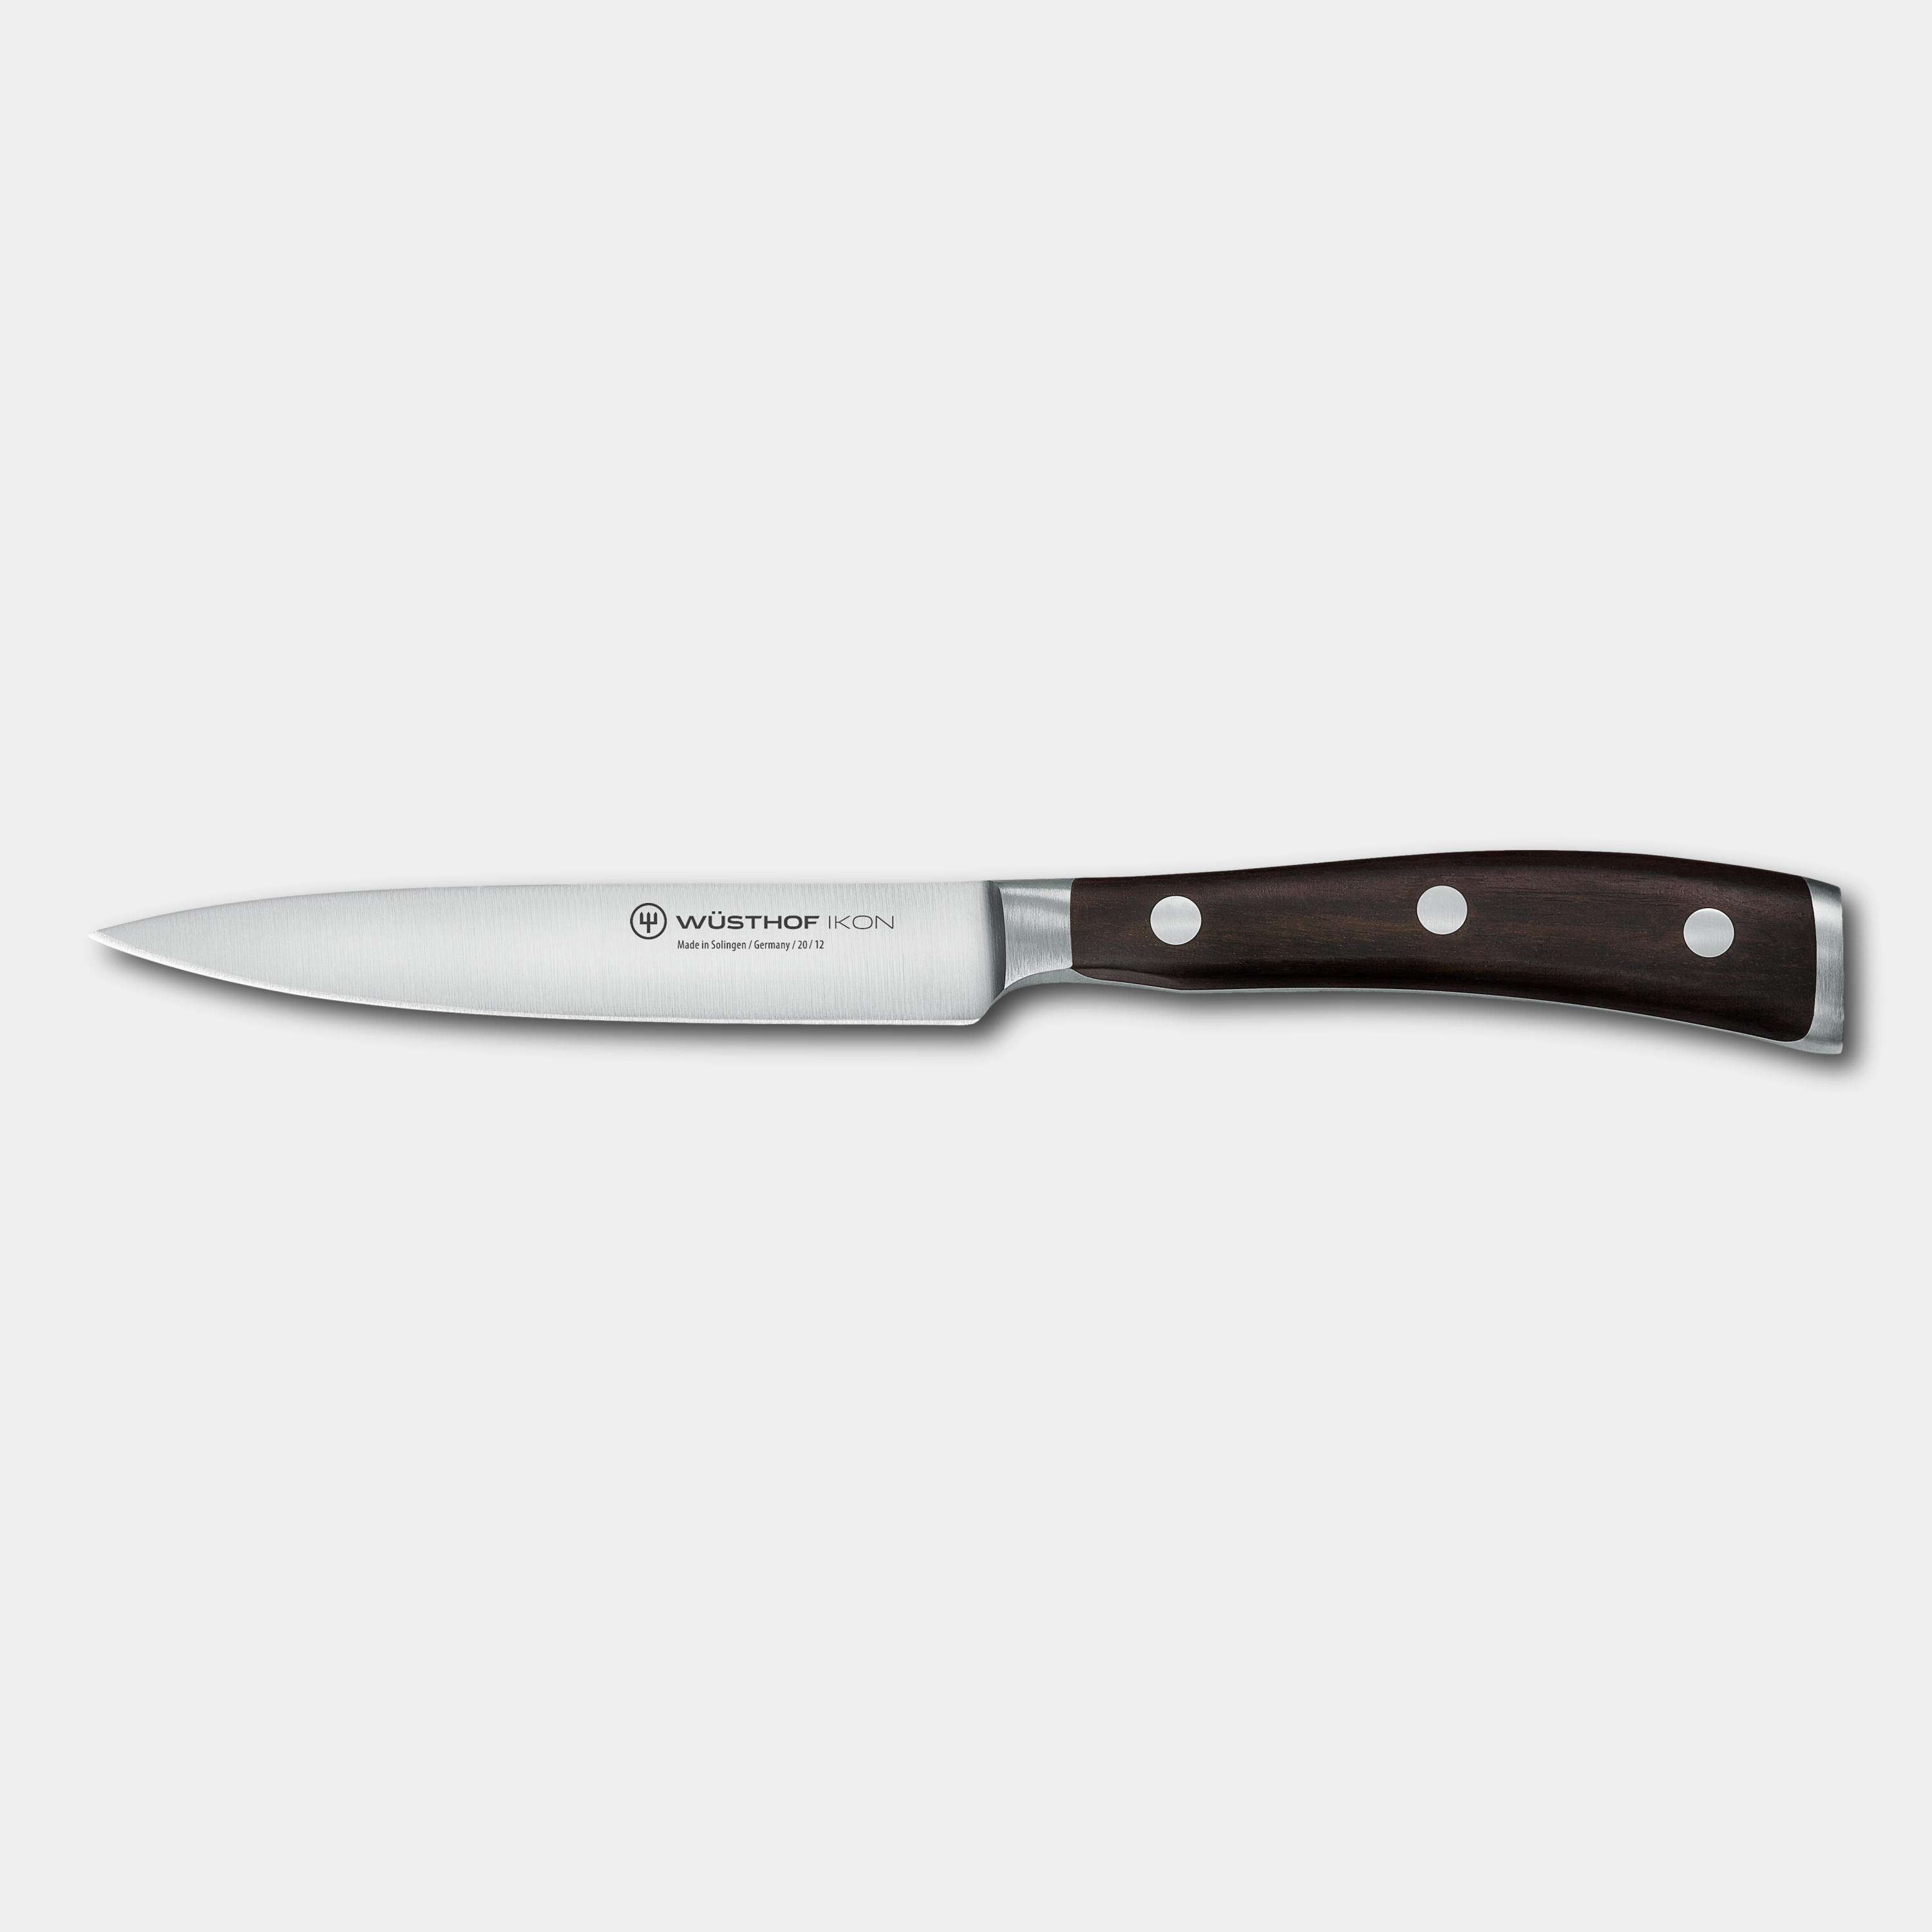 Wusthof IKON 12cm Utility Knife